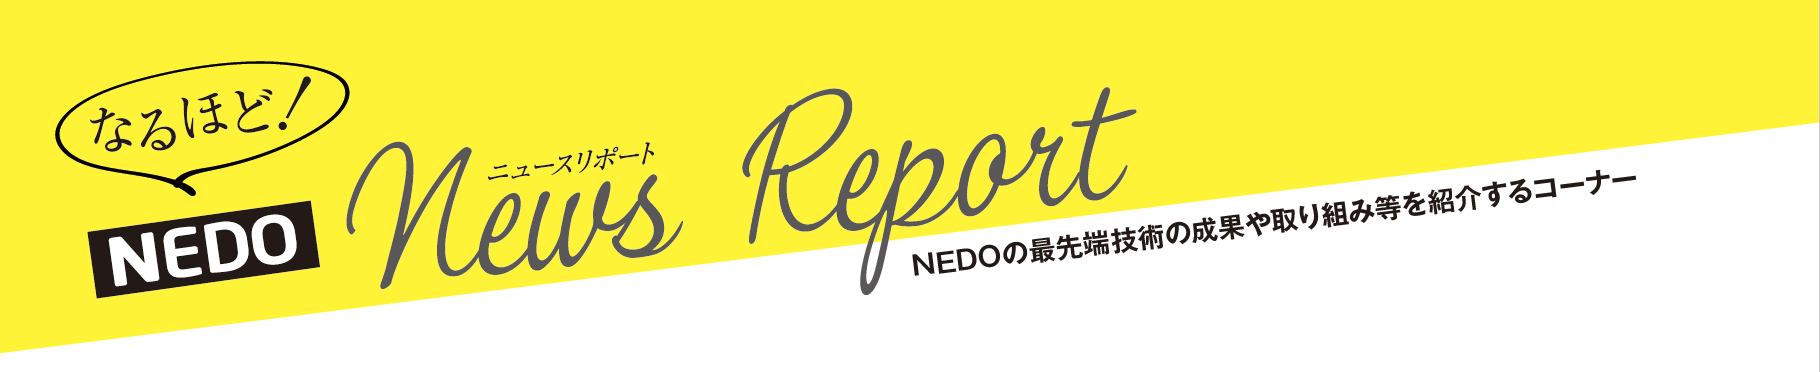 なるほど！NEDO News Report NEDOの最先端技術の成果や取り組み等を紹介するコーナー